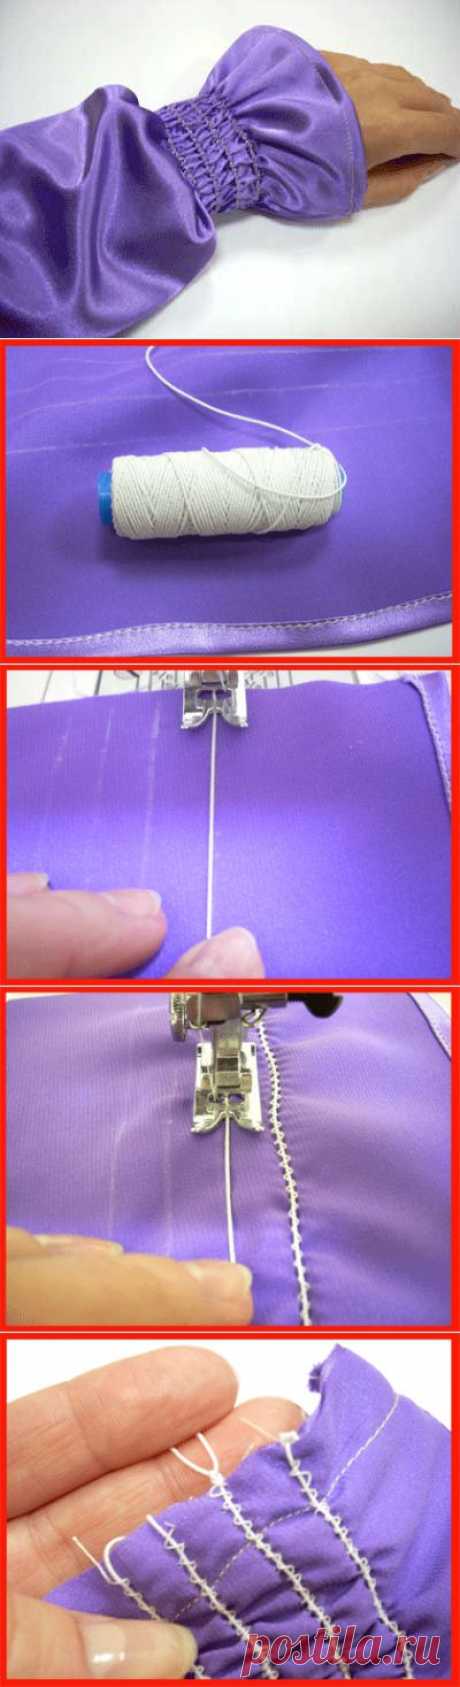 Как сшить рукав на резиновых жилках